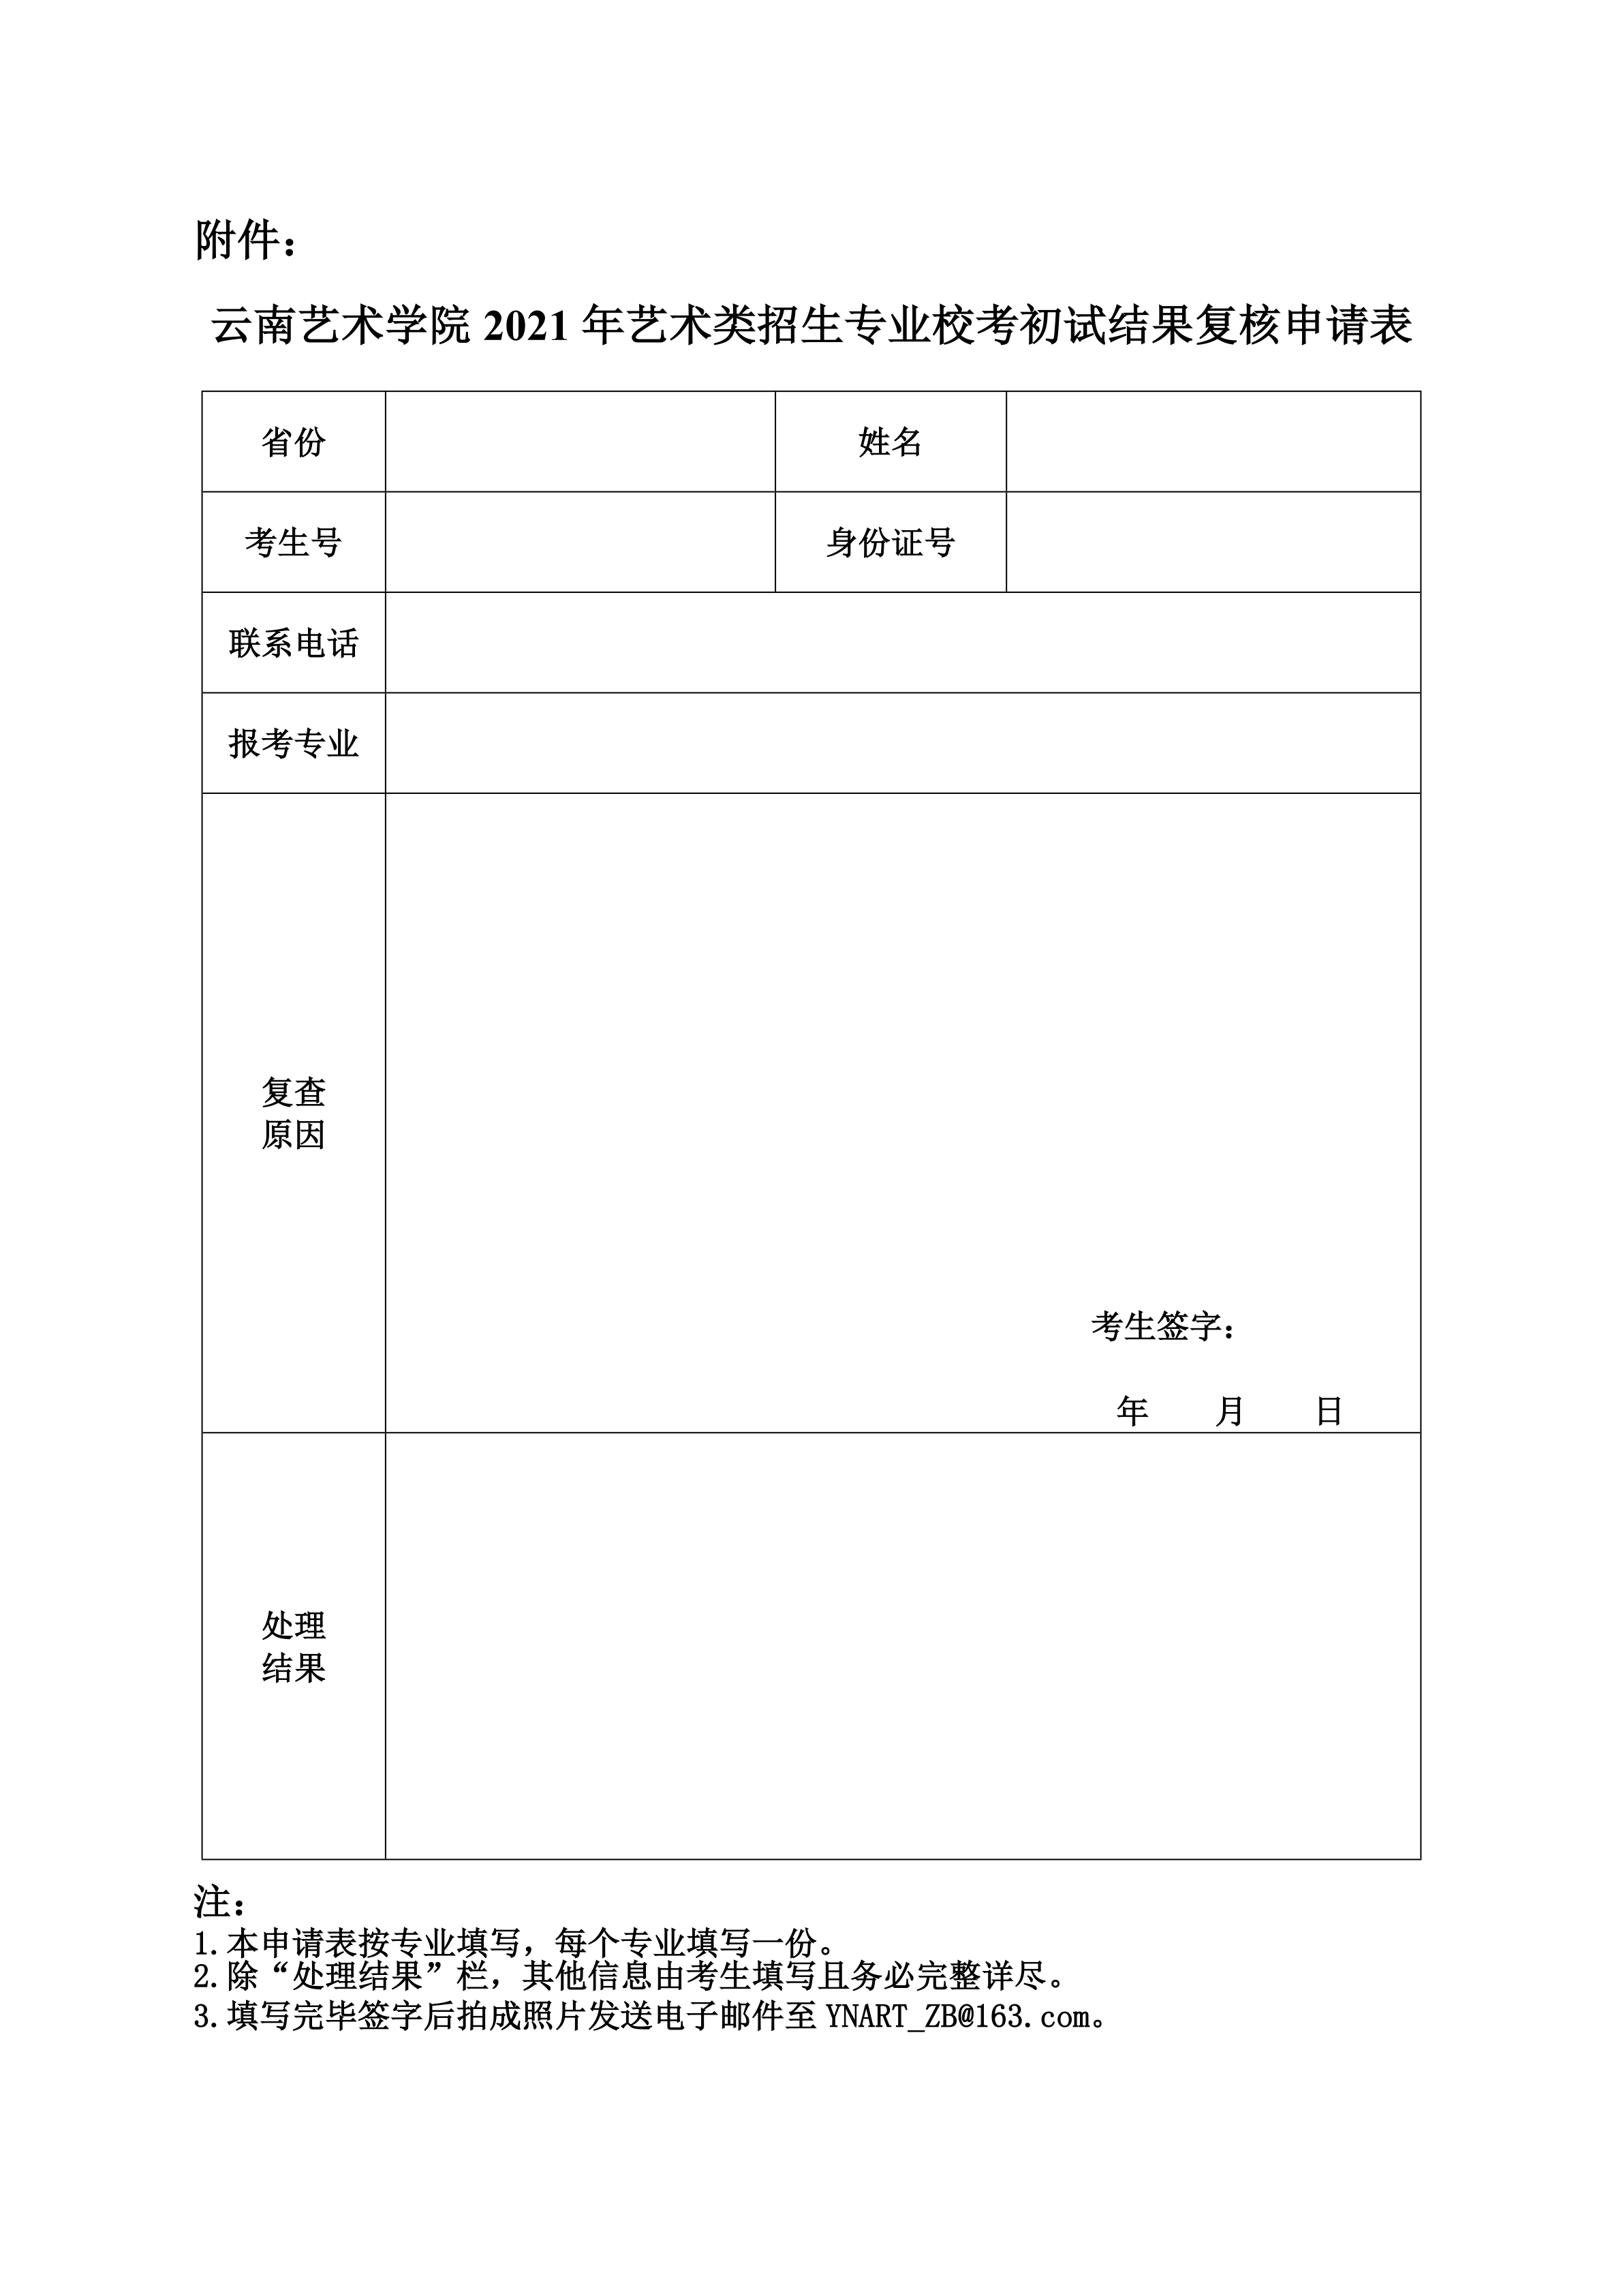 云南艺术学院2021年艺术类招生专业校考初试结果复核申请表_1.png